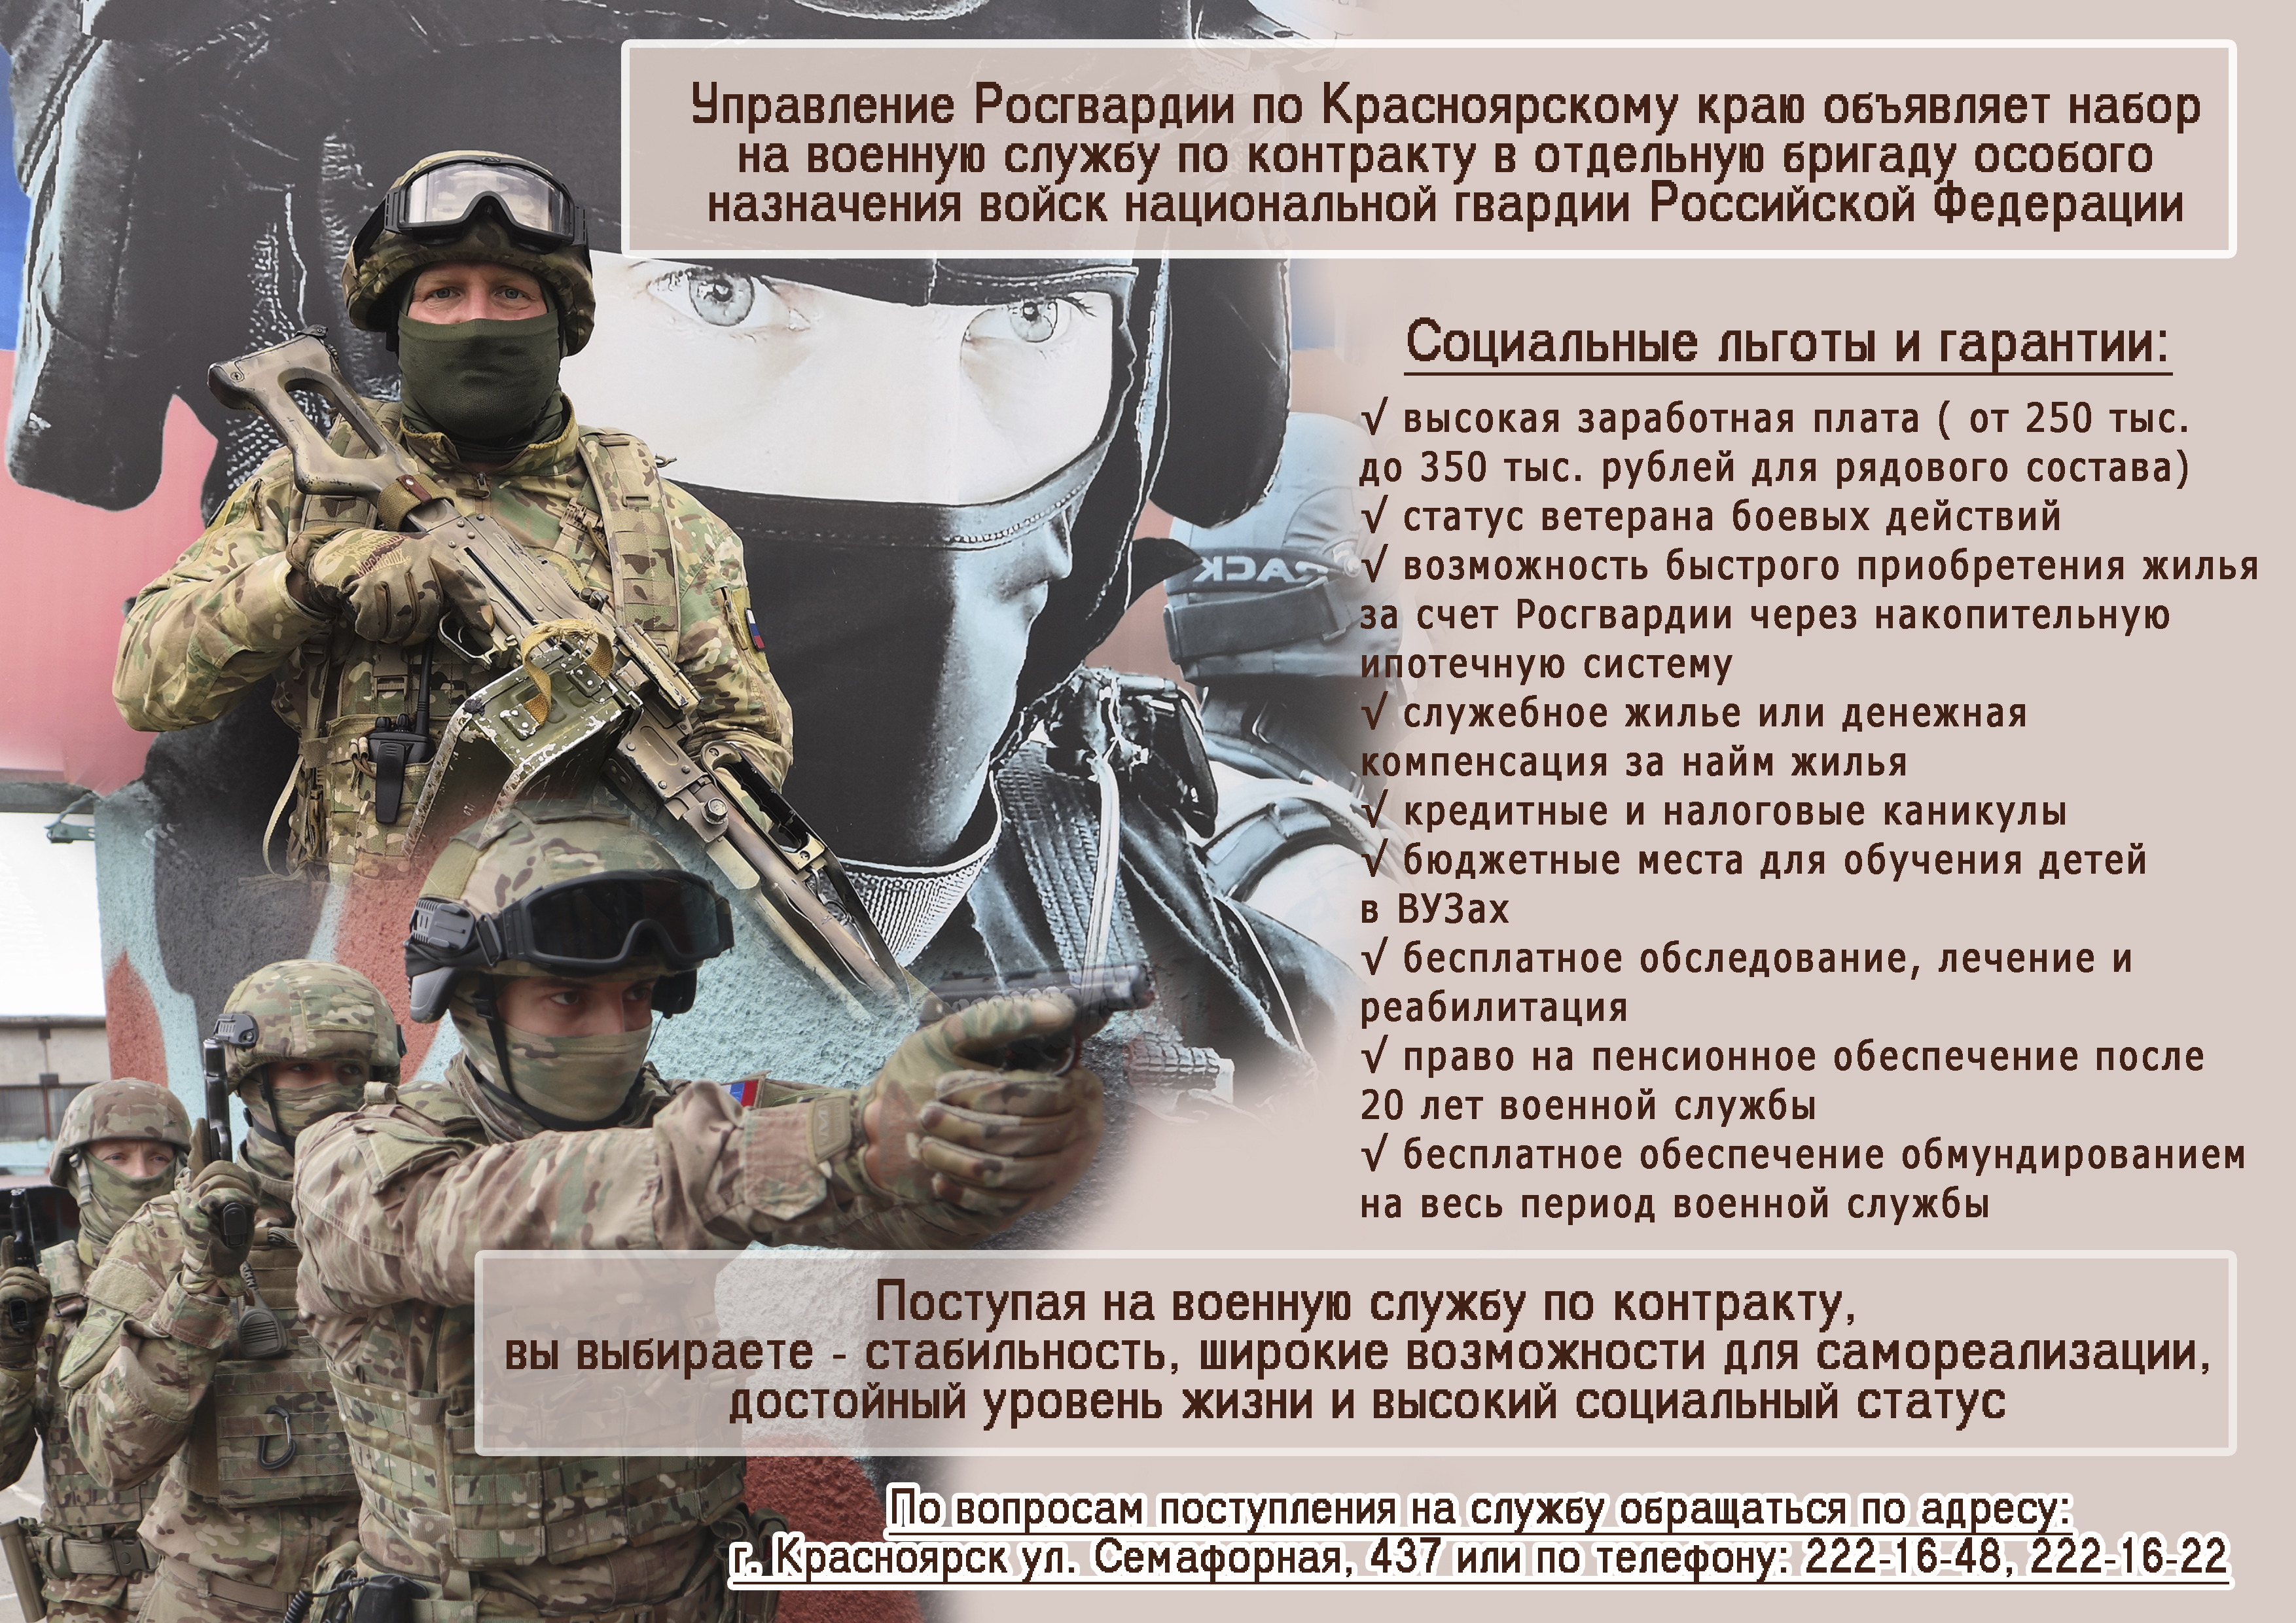 Управление Росгвардии по Красноярскому краю объявляет набор на военную службу по контракту.